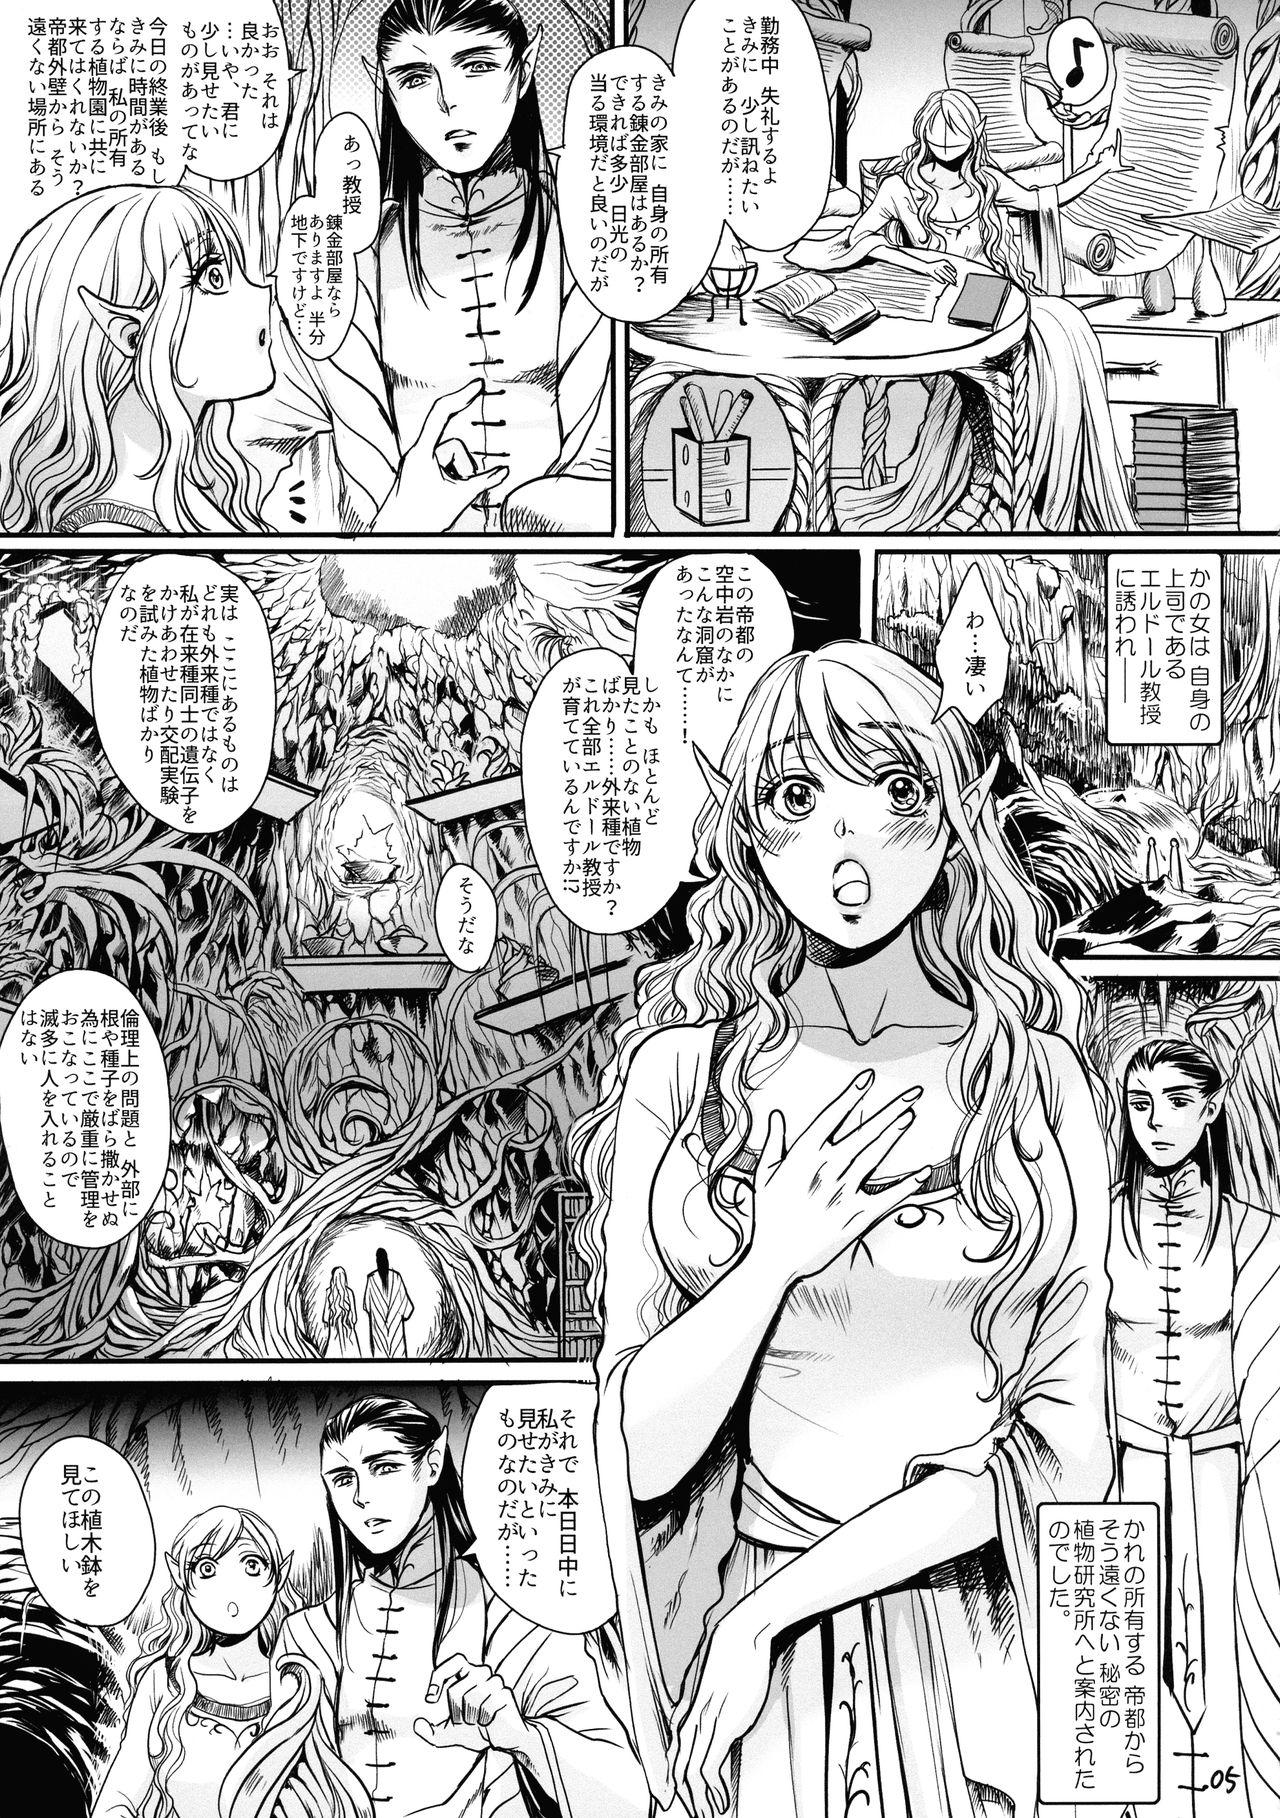 Botsu Manga `Kawaii Okusama' no Gokuyou Matome Hon + α 4